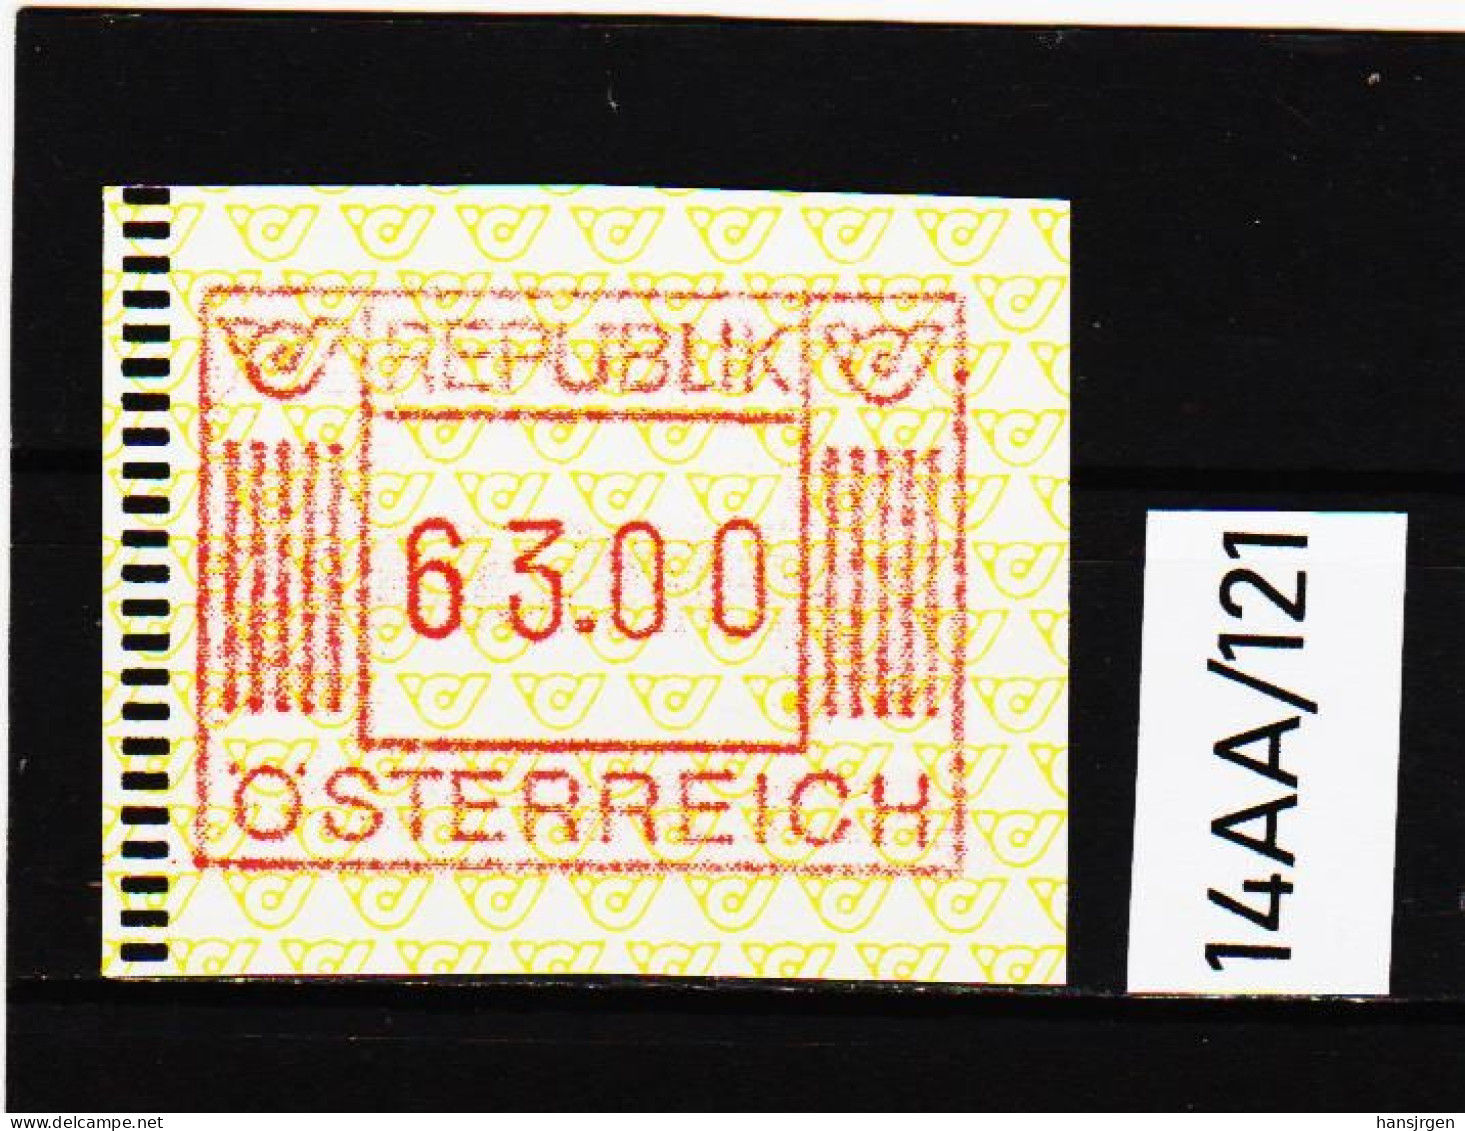 14AA/121  ÖSTERREICH 1983 AUTOMATENMARKEN  A N K  1. AUSGABE  63,00 SCHILLING   ** Postfrisch - Automatenmarken [ATM]